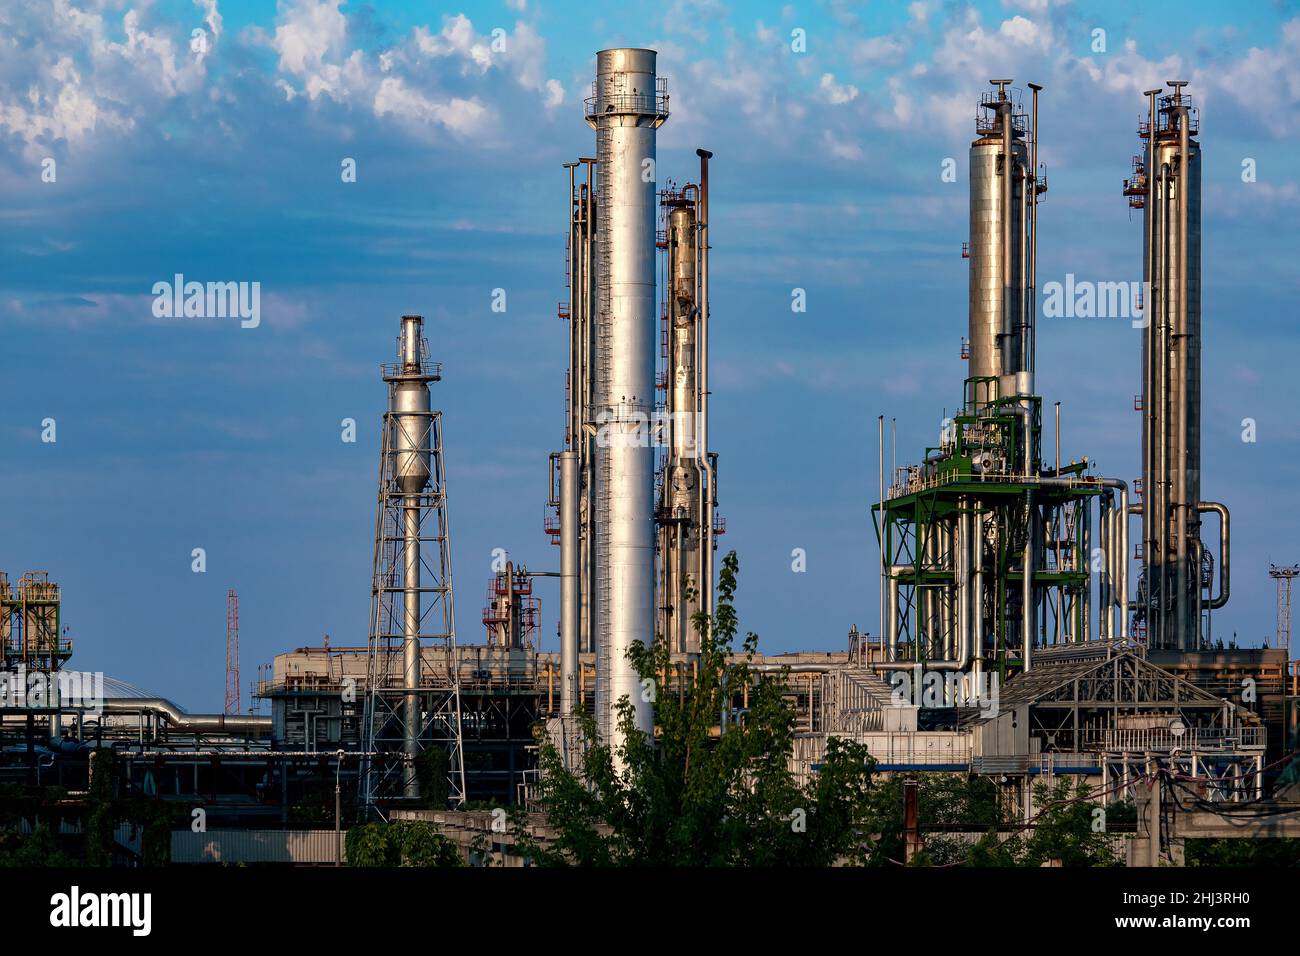 planta industrial con tubos metálicos grises contra un cielo azul con nubes, nadie. Foto de stock